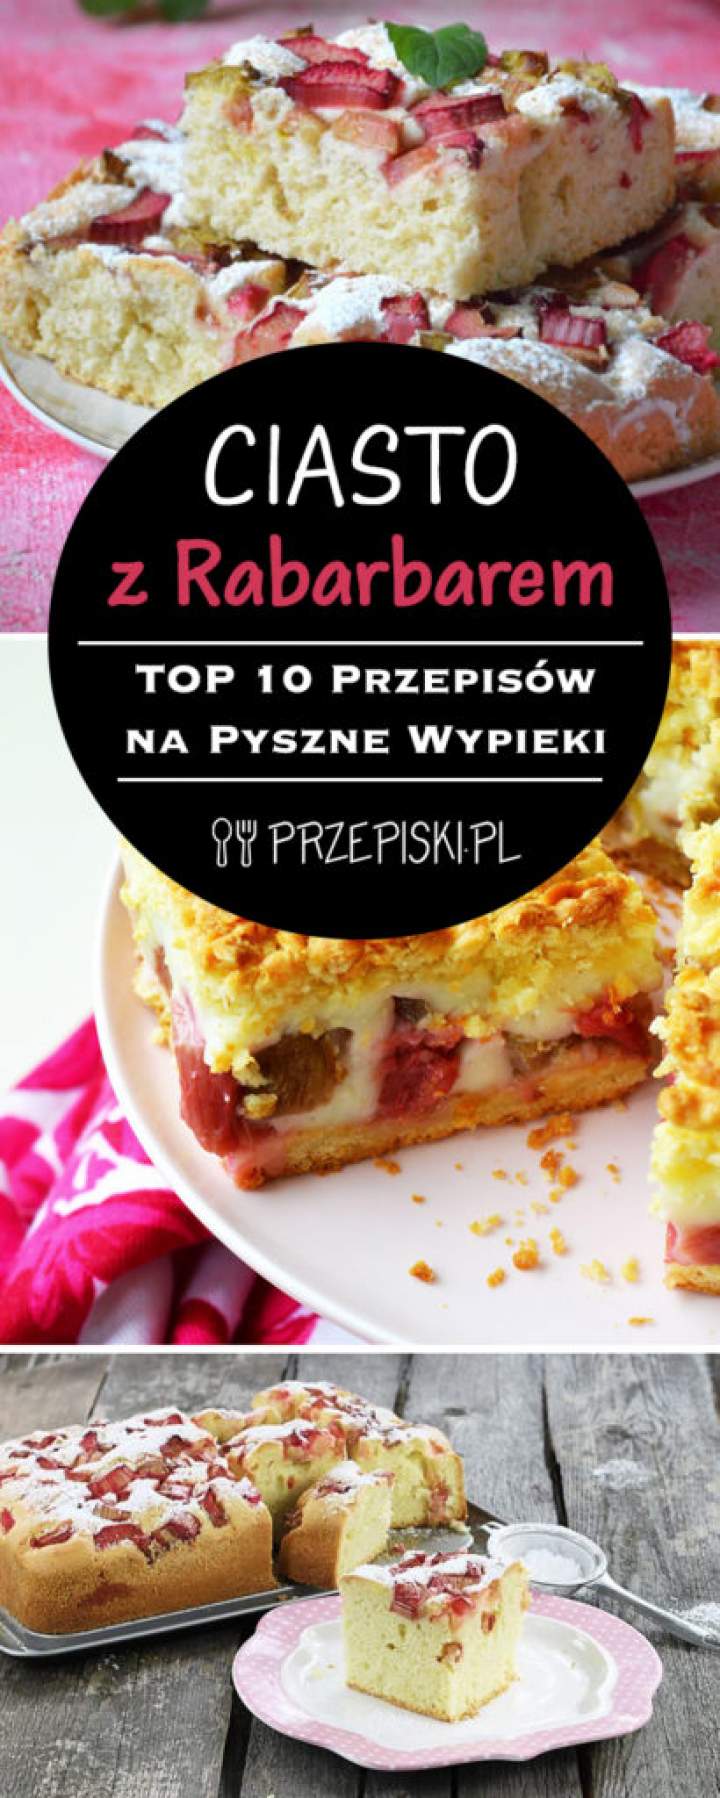 Domowe Ciasto z Rabarbarem – TOP 10 Przepisów na Pyszne Wypieki